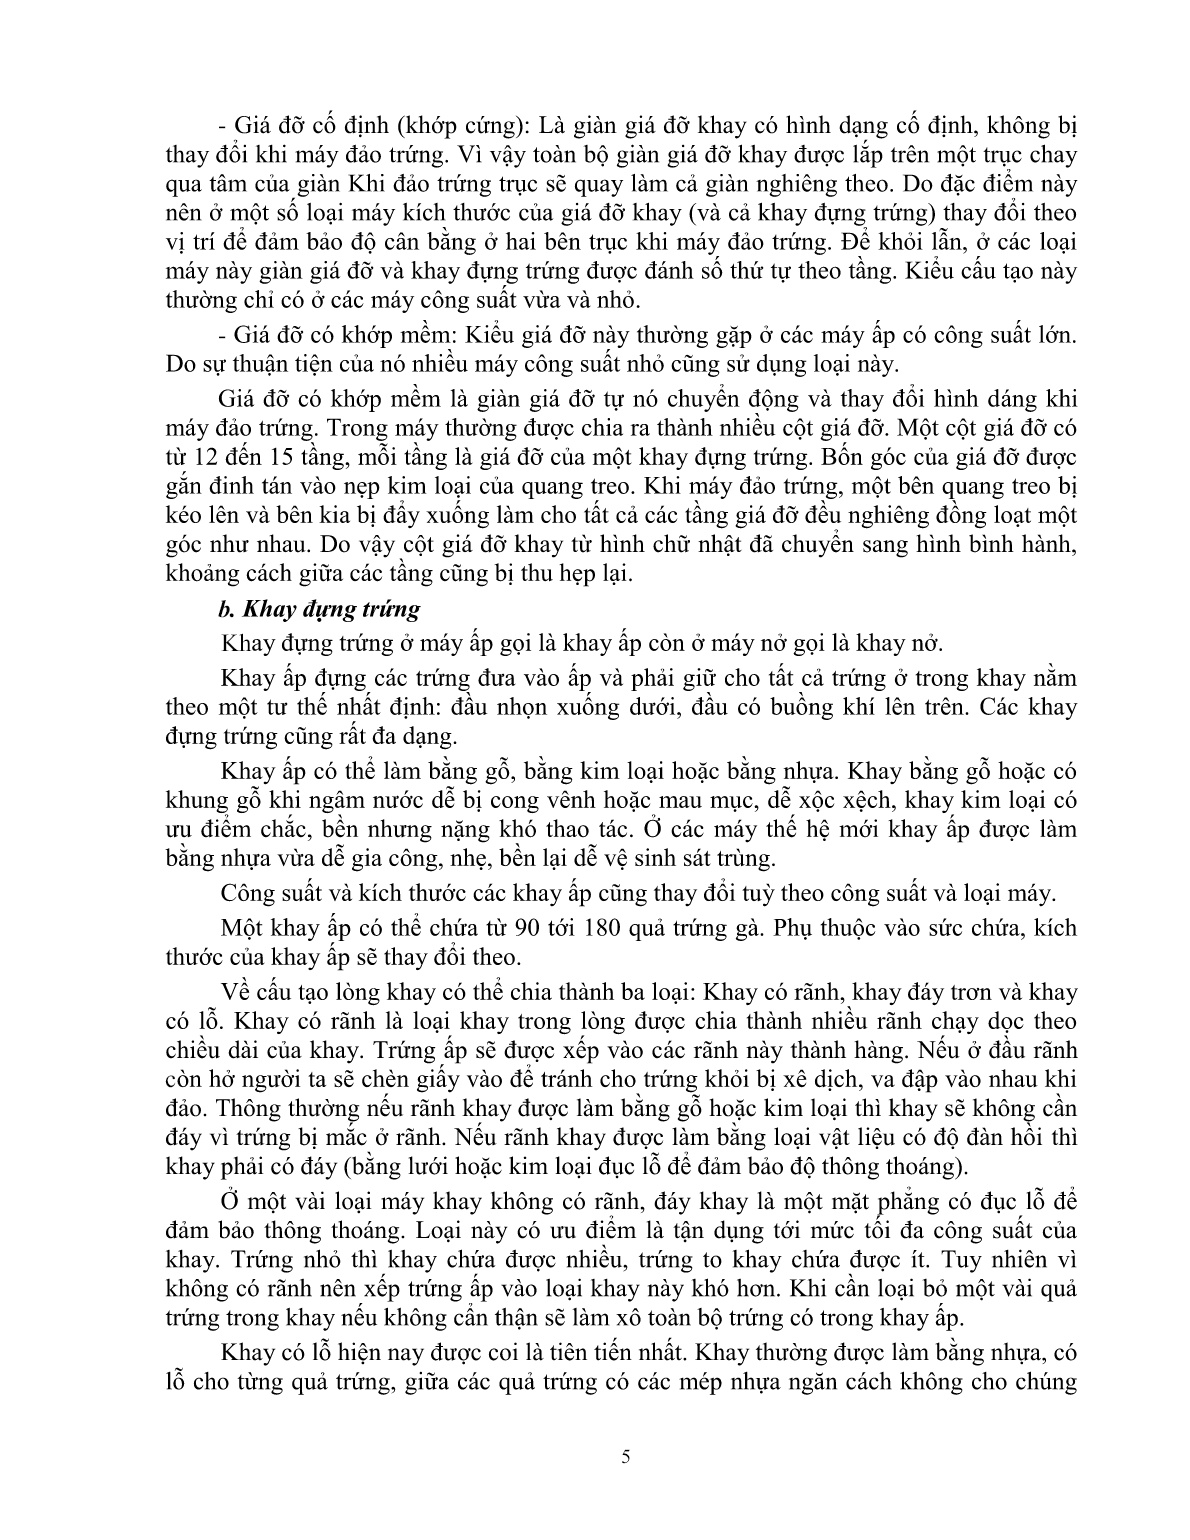 Giáo trình mô đun Ấp trứng gà (Trình độ: Đào tạo dưới 3 tháng) trang 6